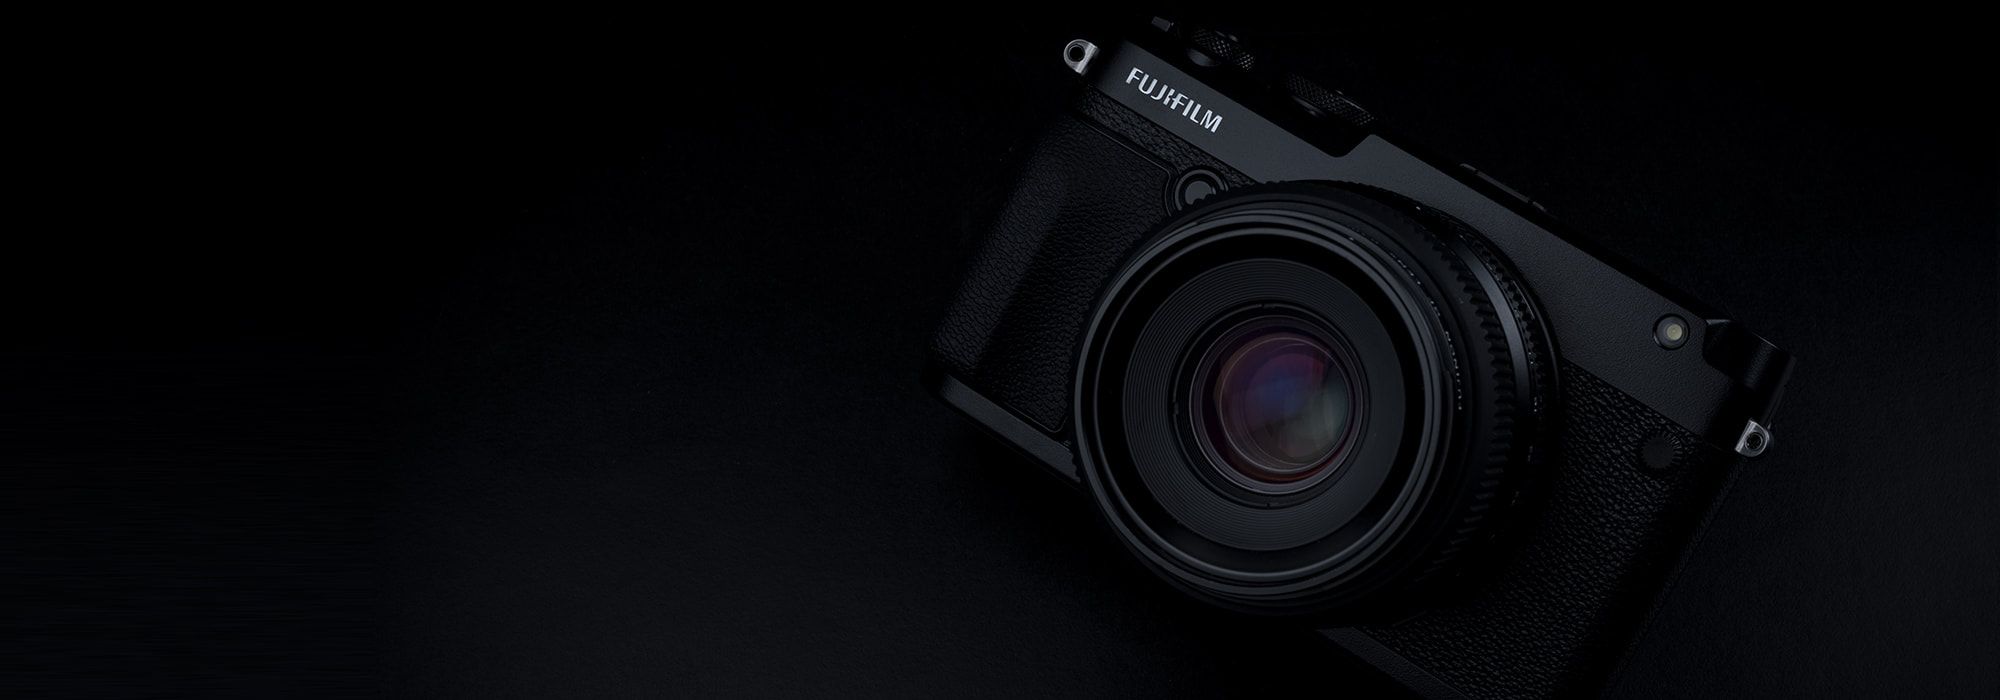 Fujifilm GFX 50R camera model